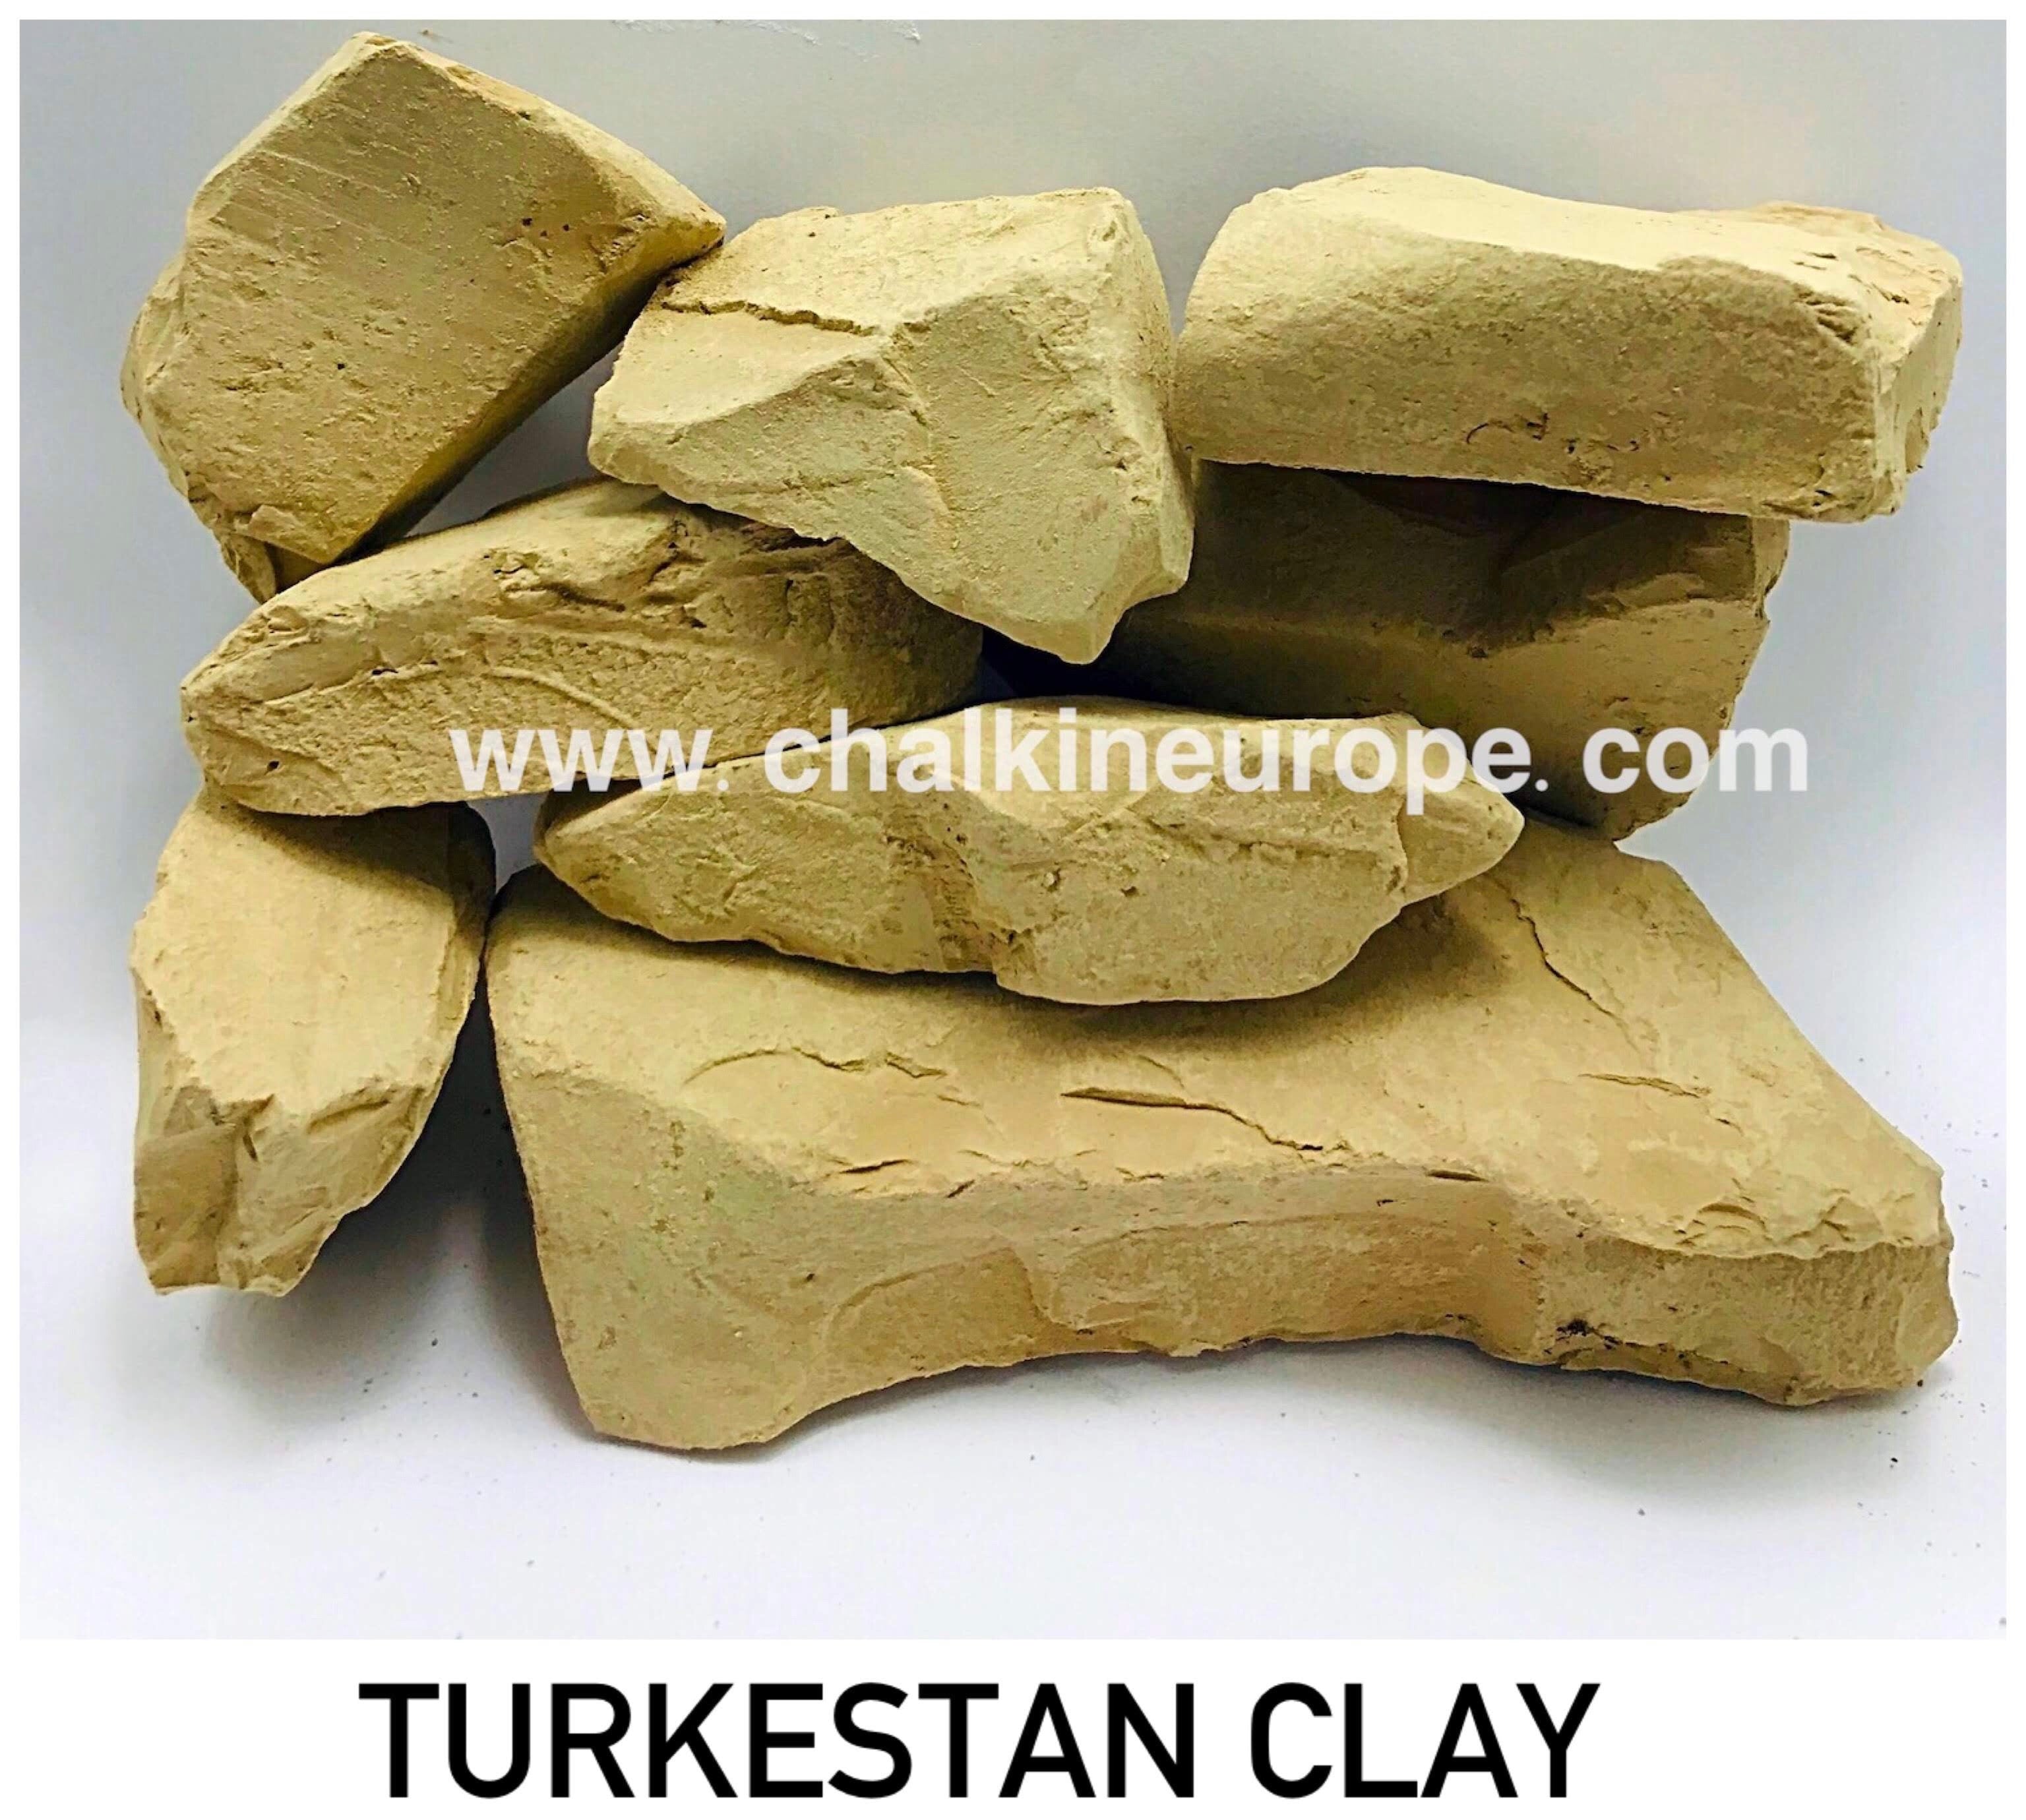 トルキスタン粘土 - カルキニューロプ